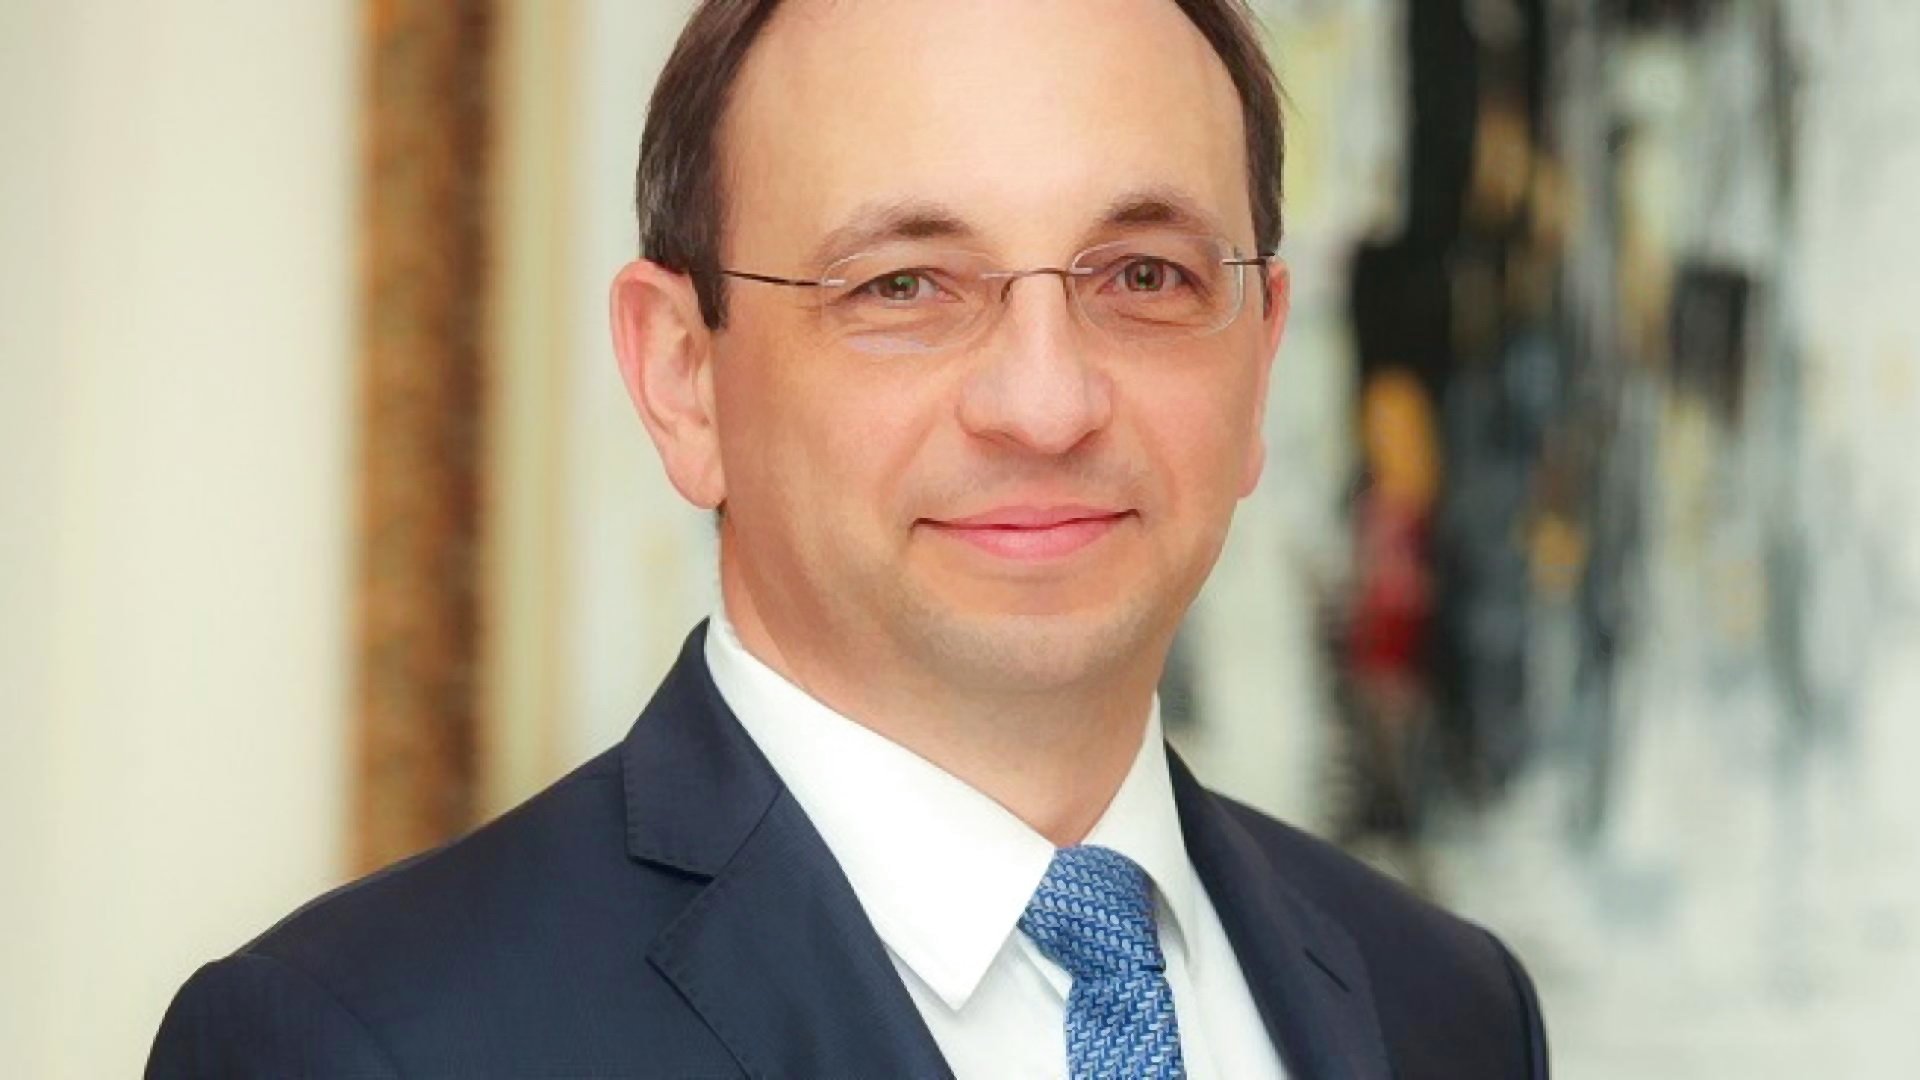 Николай Василев, вице-премьер Правительства, министр экономики Республики Болгария.